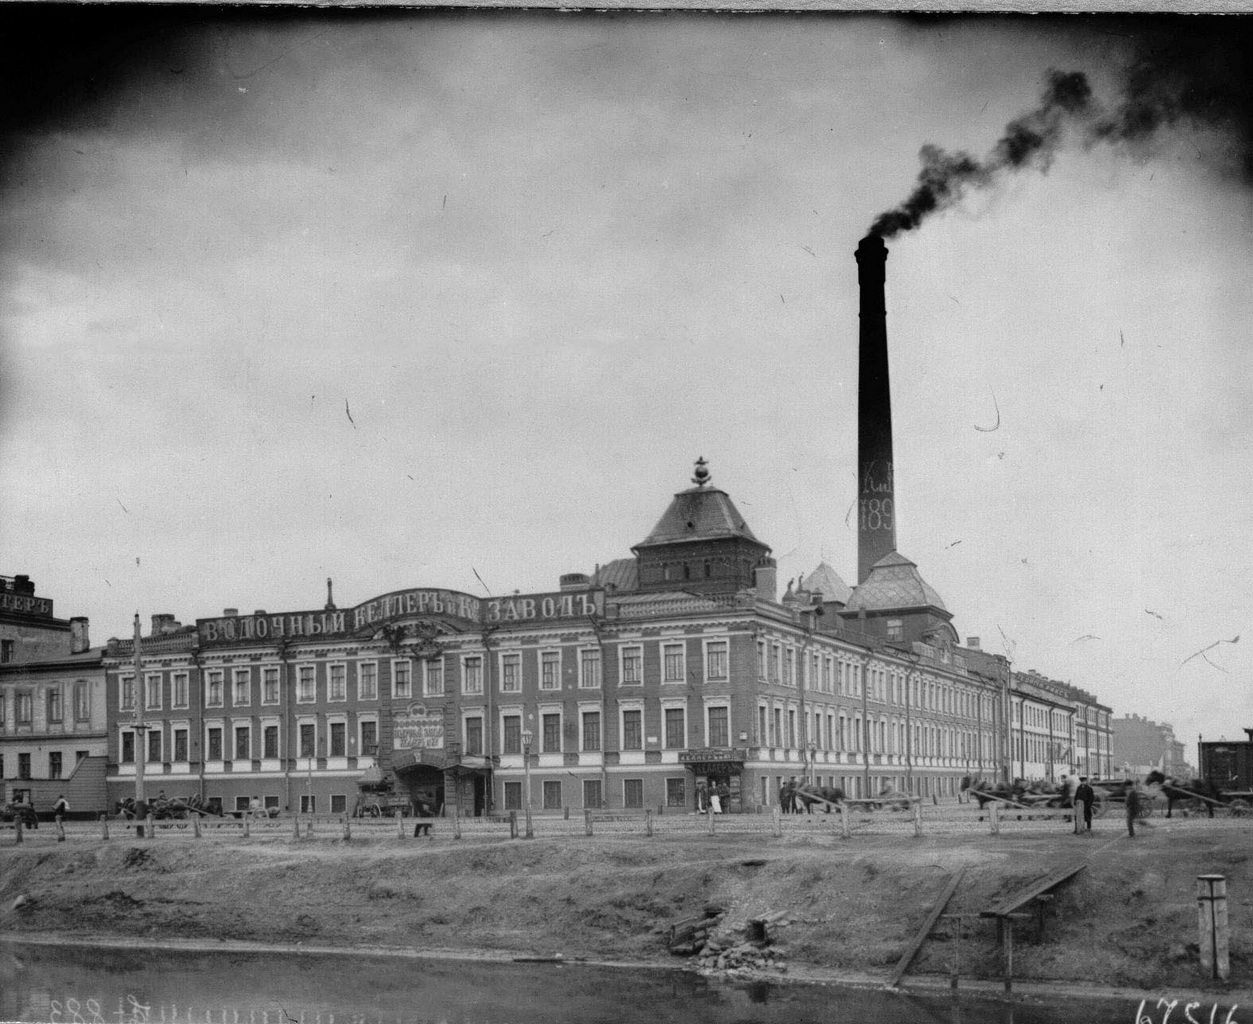 Bienvenue à la fabrique de vodka de la compagnie Keller & K°, fondée par un citoyen russe d’origine allemande. Elle ouvrit ses portes en 1863 au croisement de l’actuel quai d’Obvodni Canal et de la rue Zaozernaïa à Saint-Pétersbourg. 